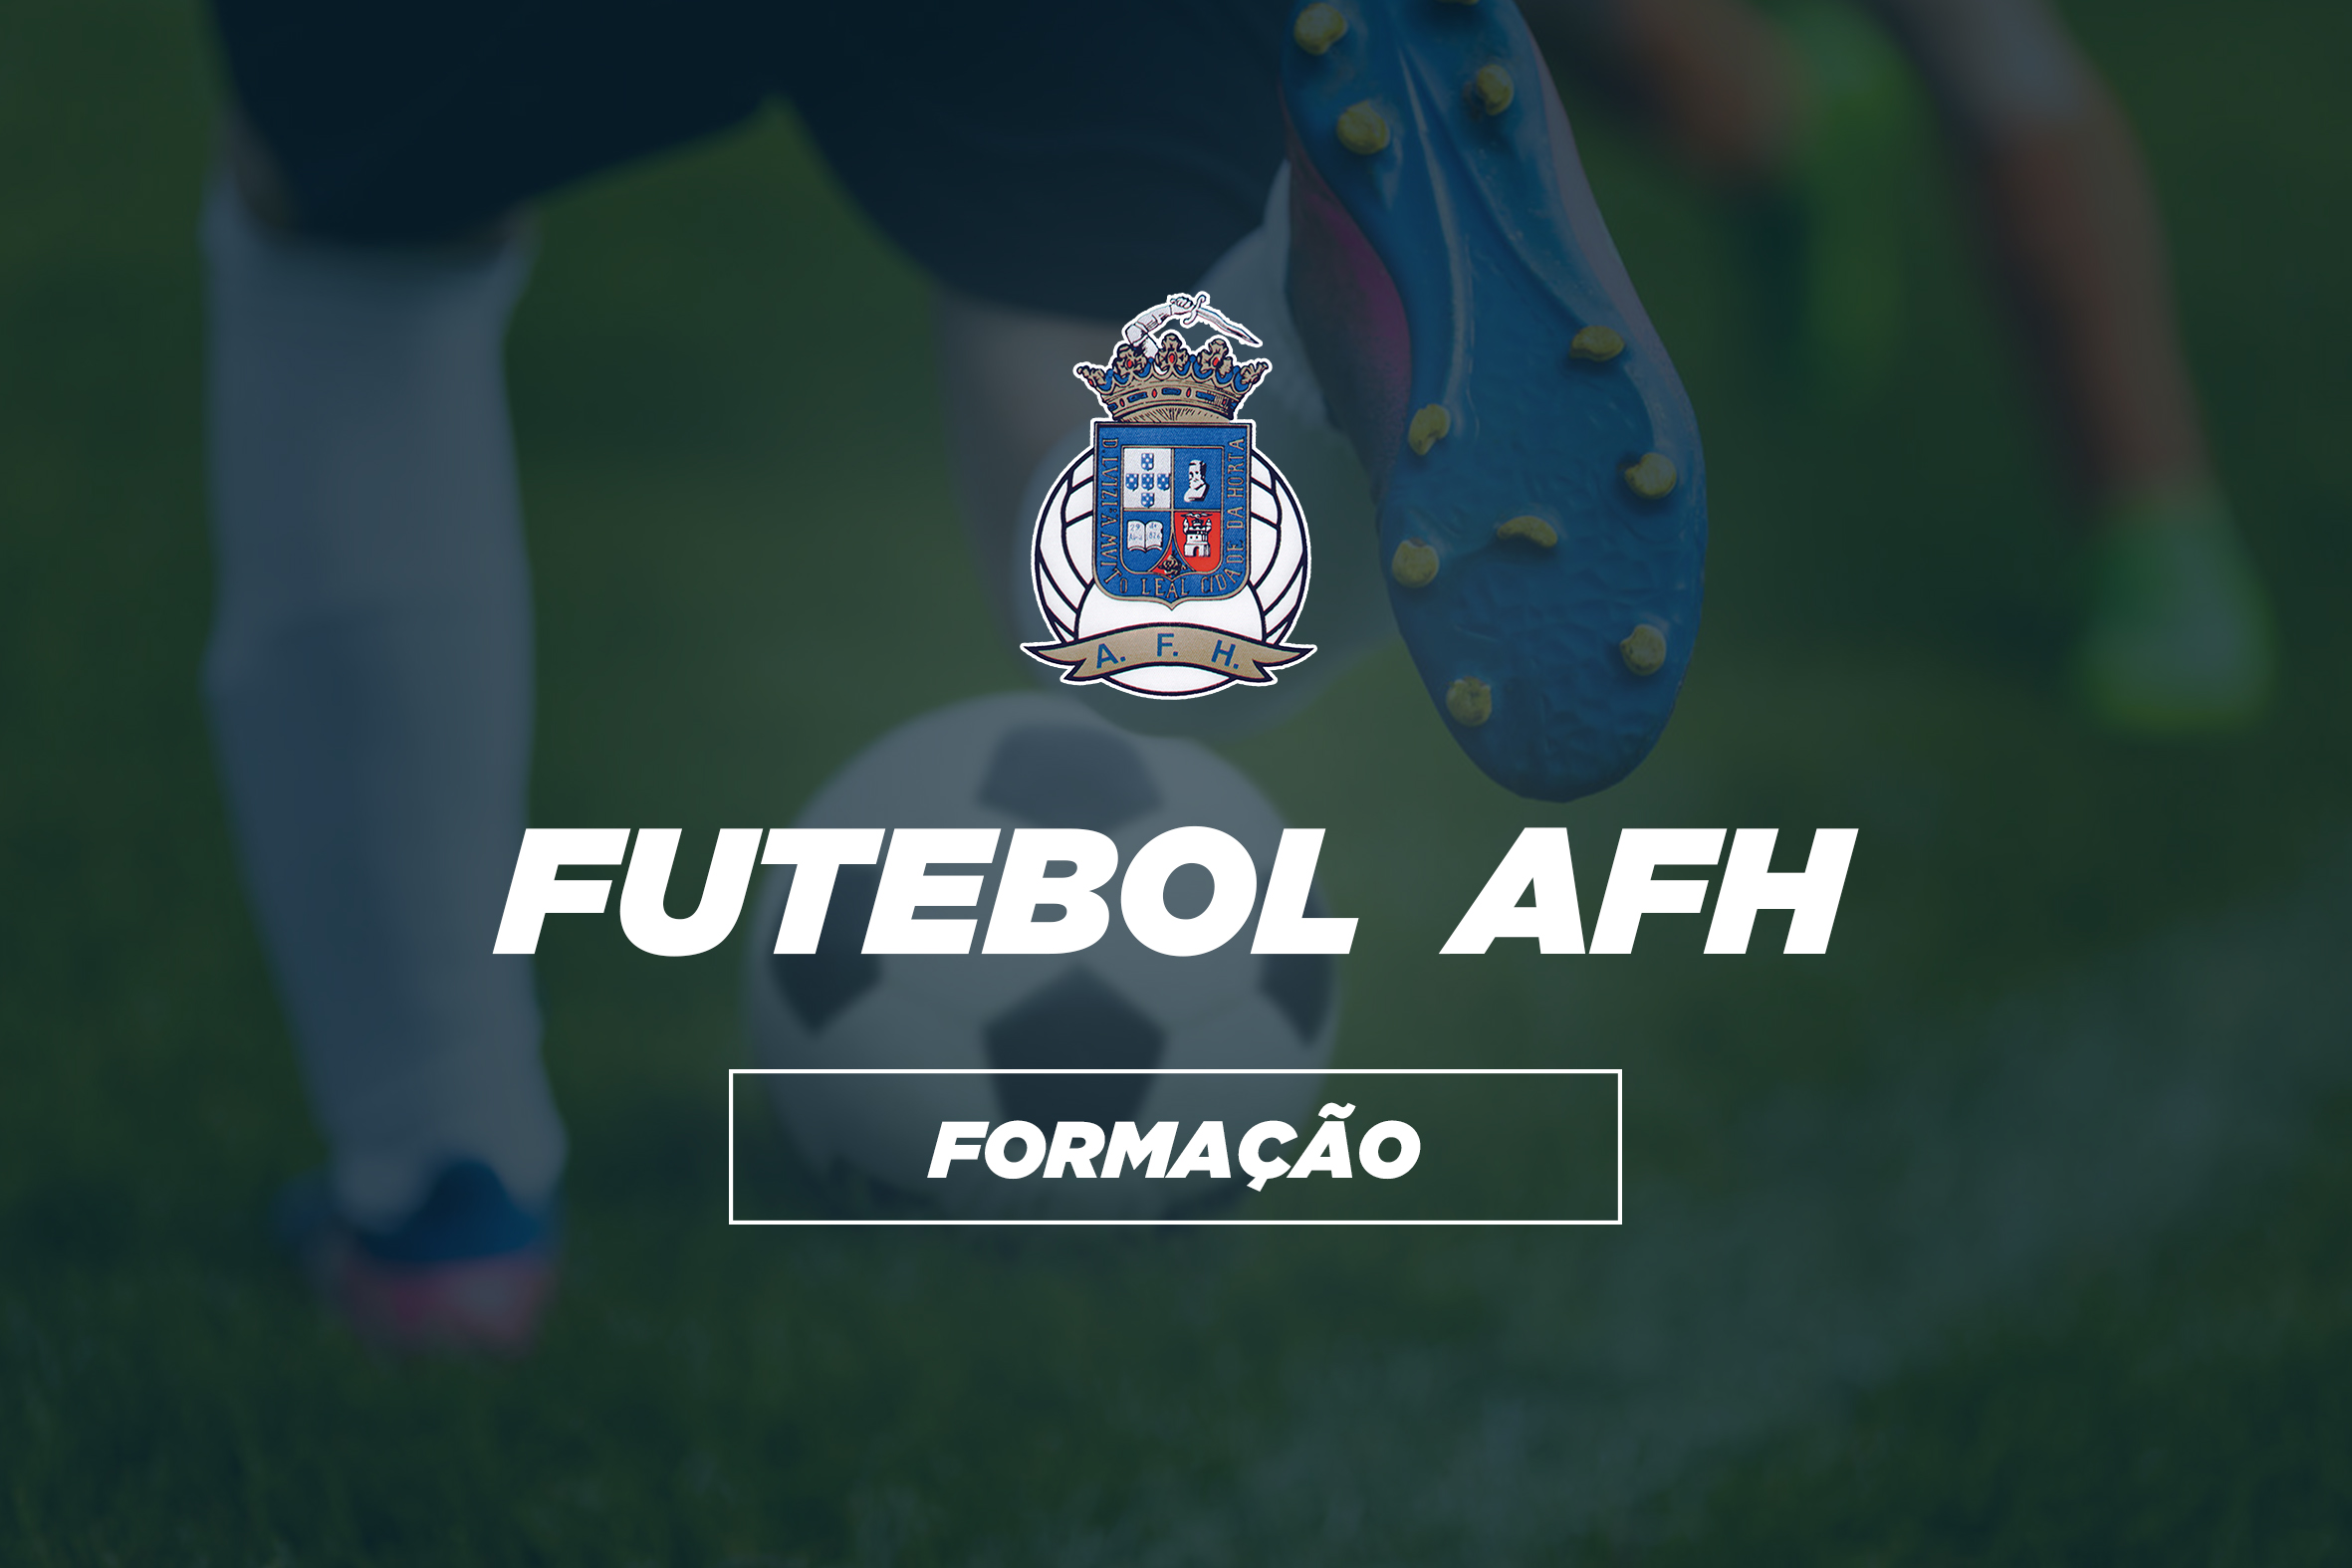 Competições AFH | Formação - Futebol